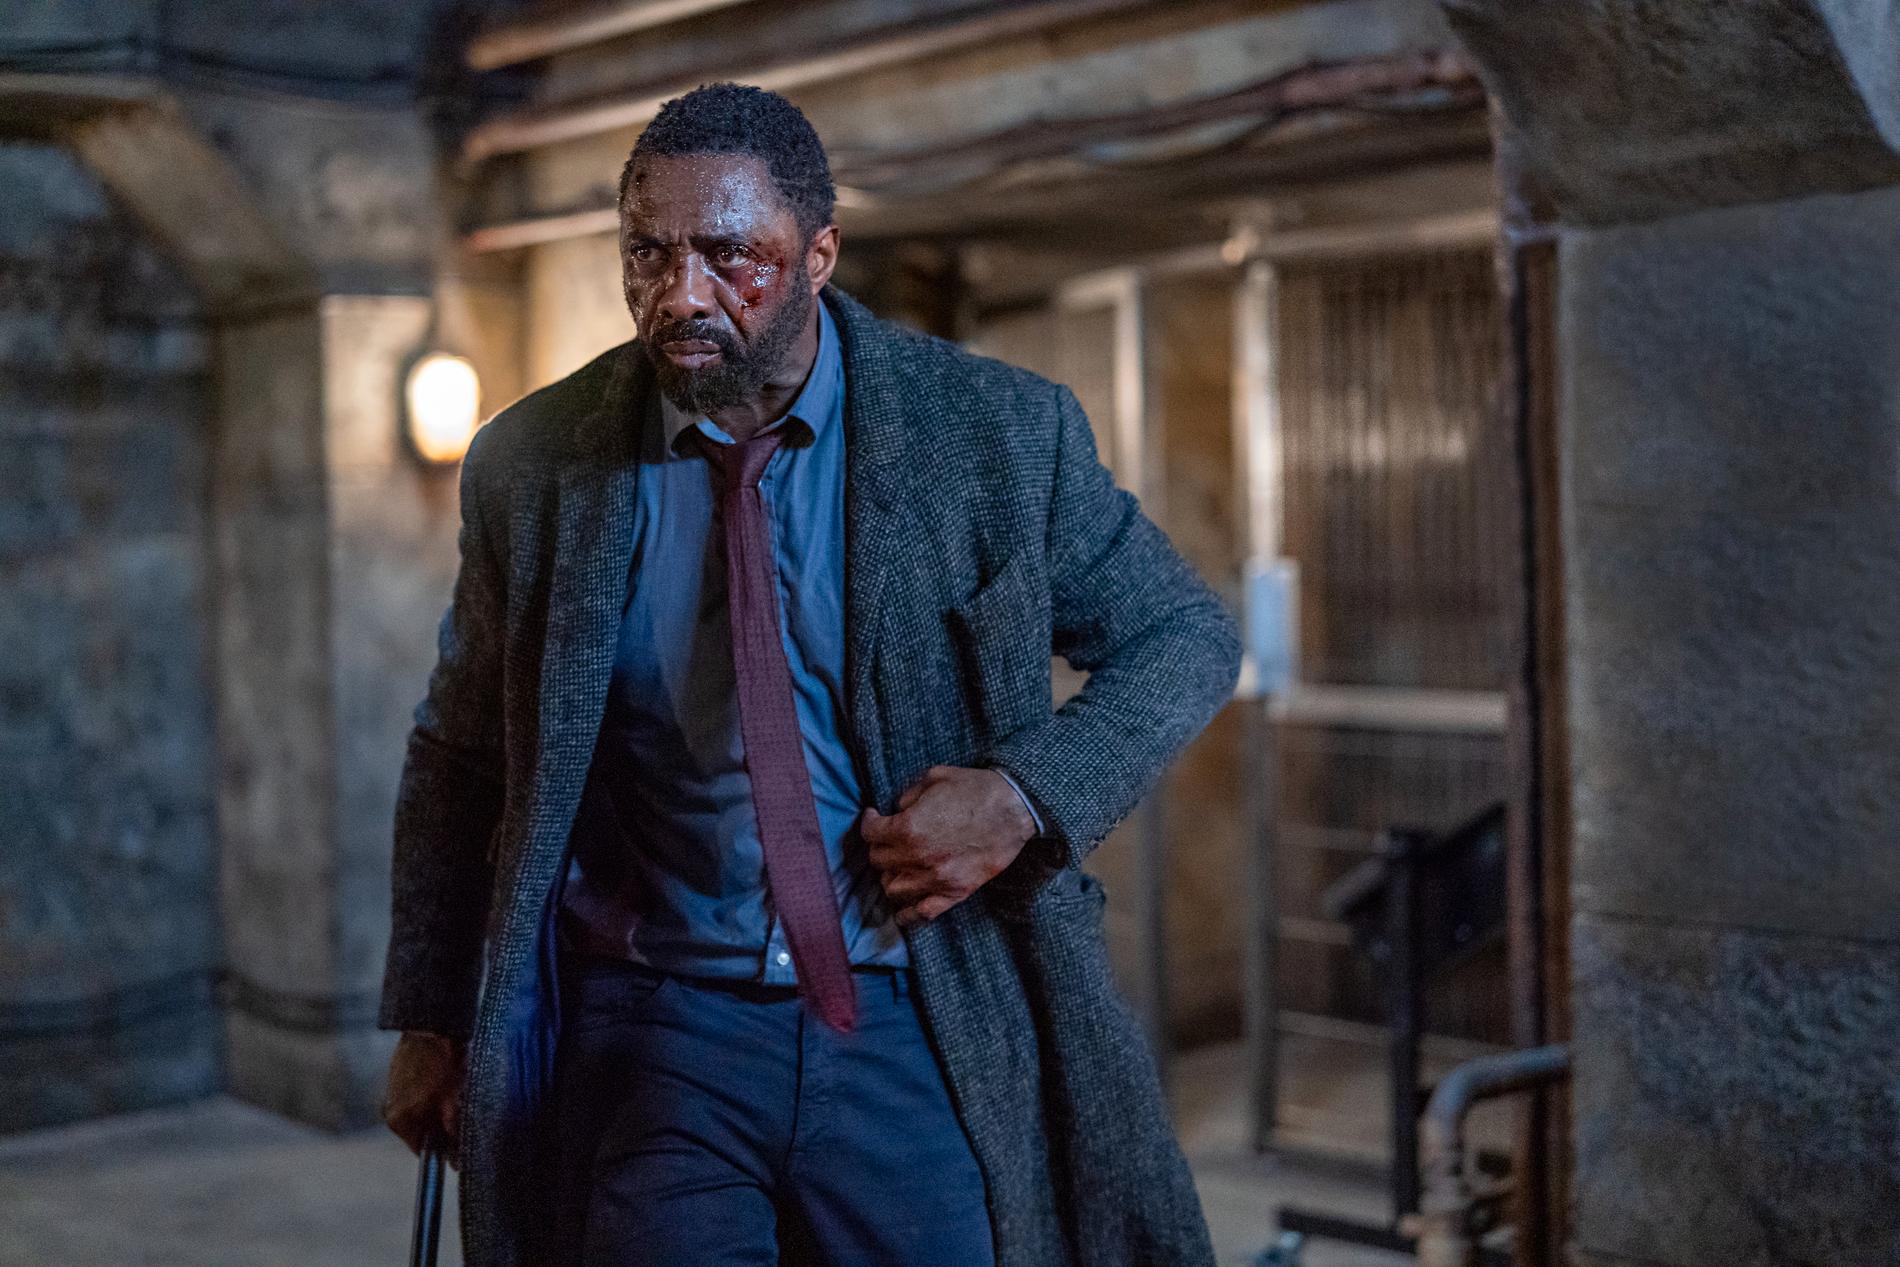 Idris Elba är tillbaka som snuten John Luther i den nya Netflixfilmen "Luther: The fallen son". Pressbild.